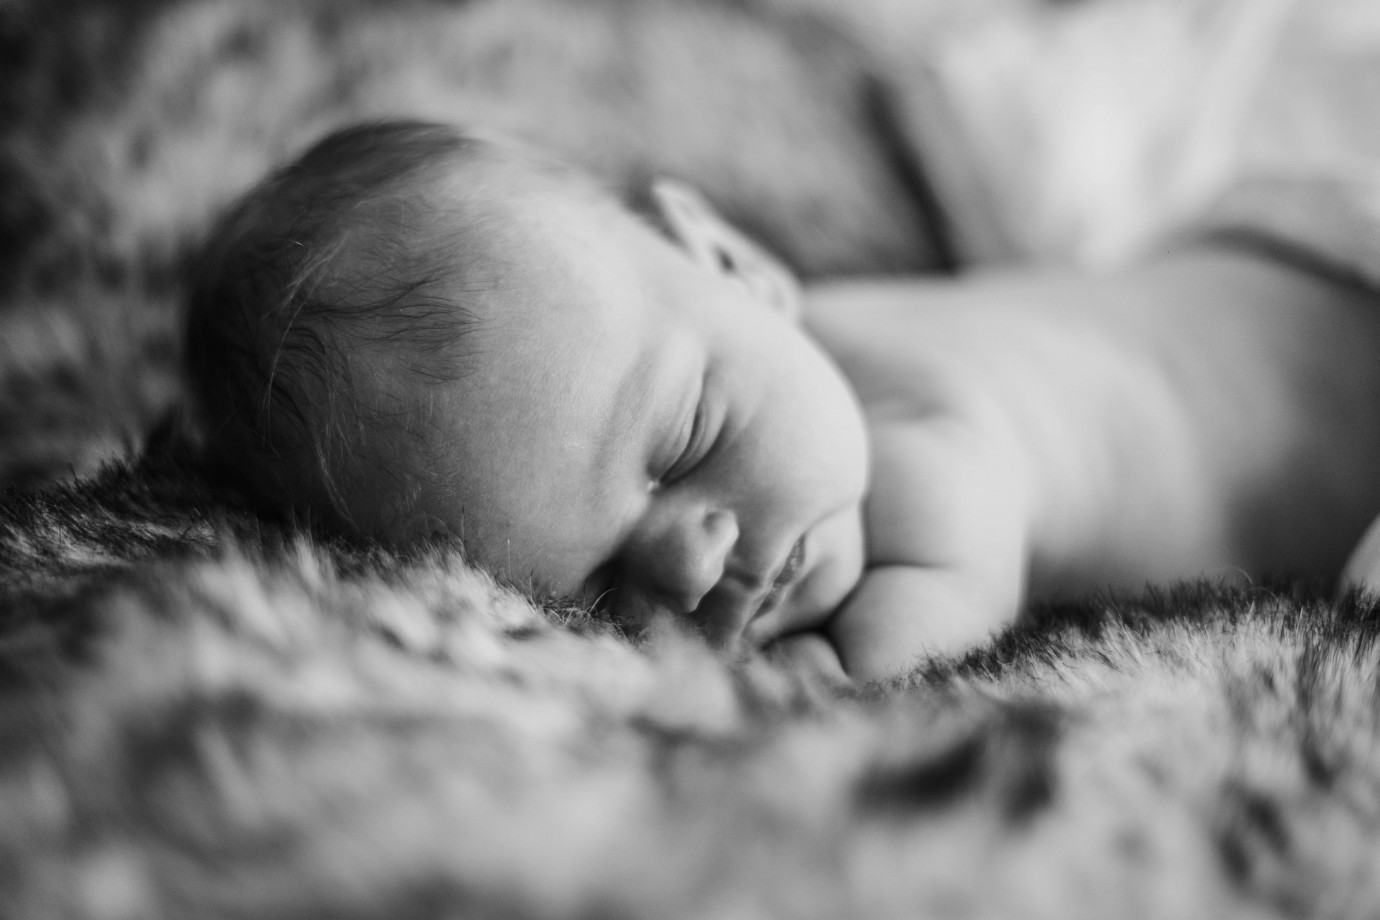 fotograf krakow irina-bogatu portfolio zdjecia noworodkow sesje noworodkowe niemowlę